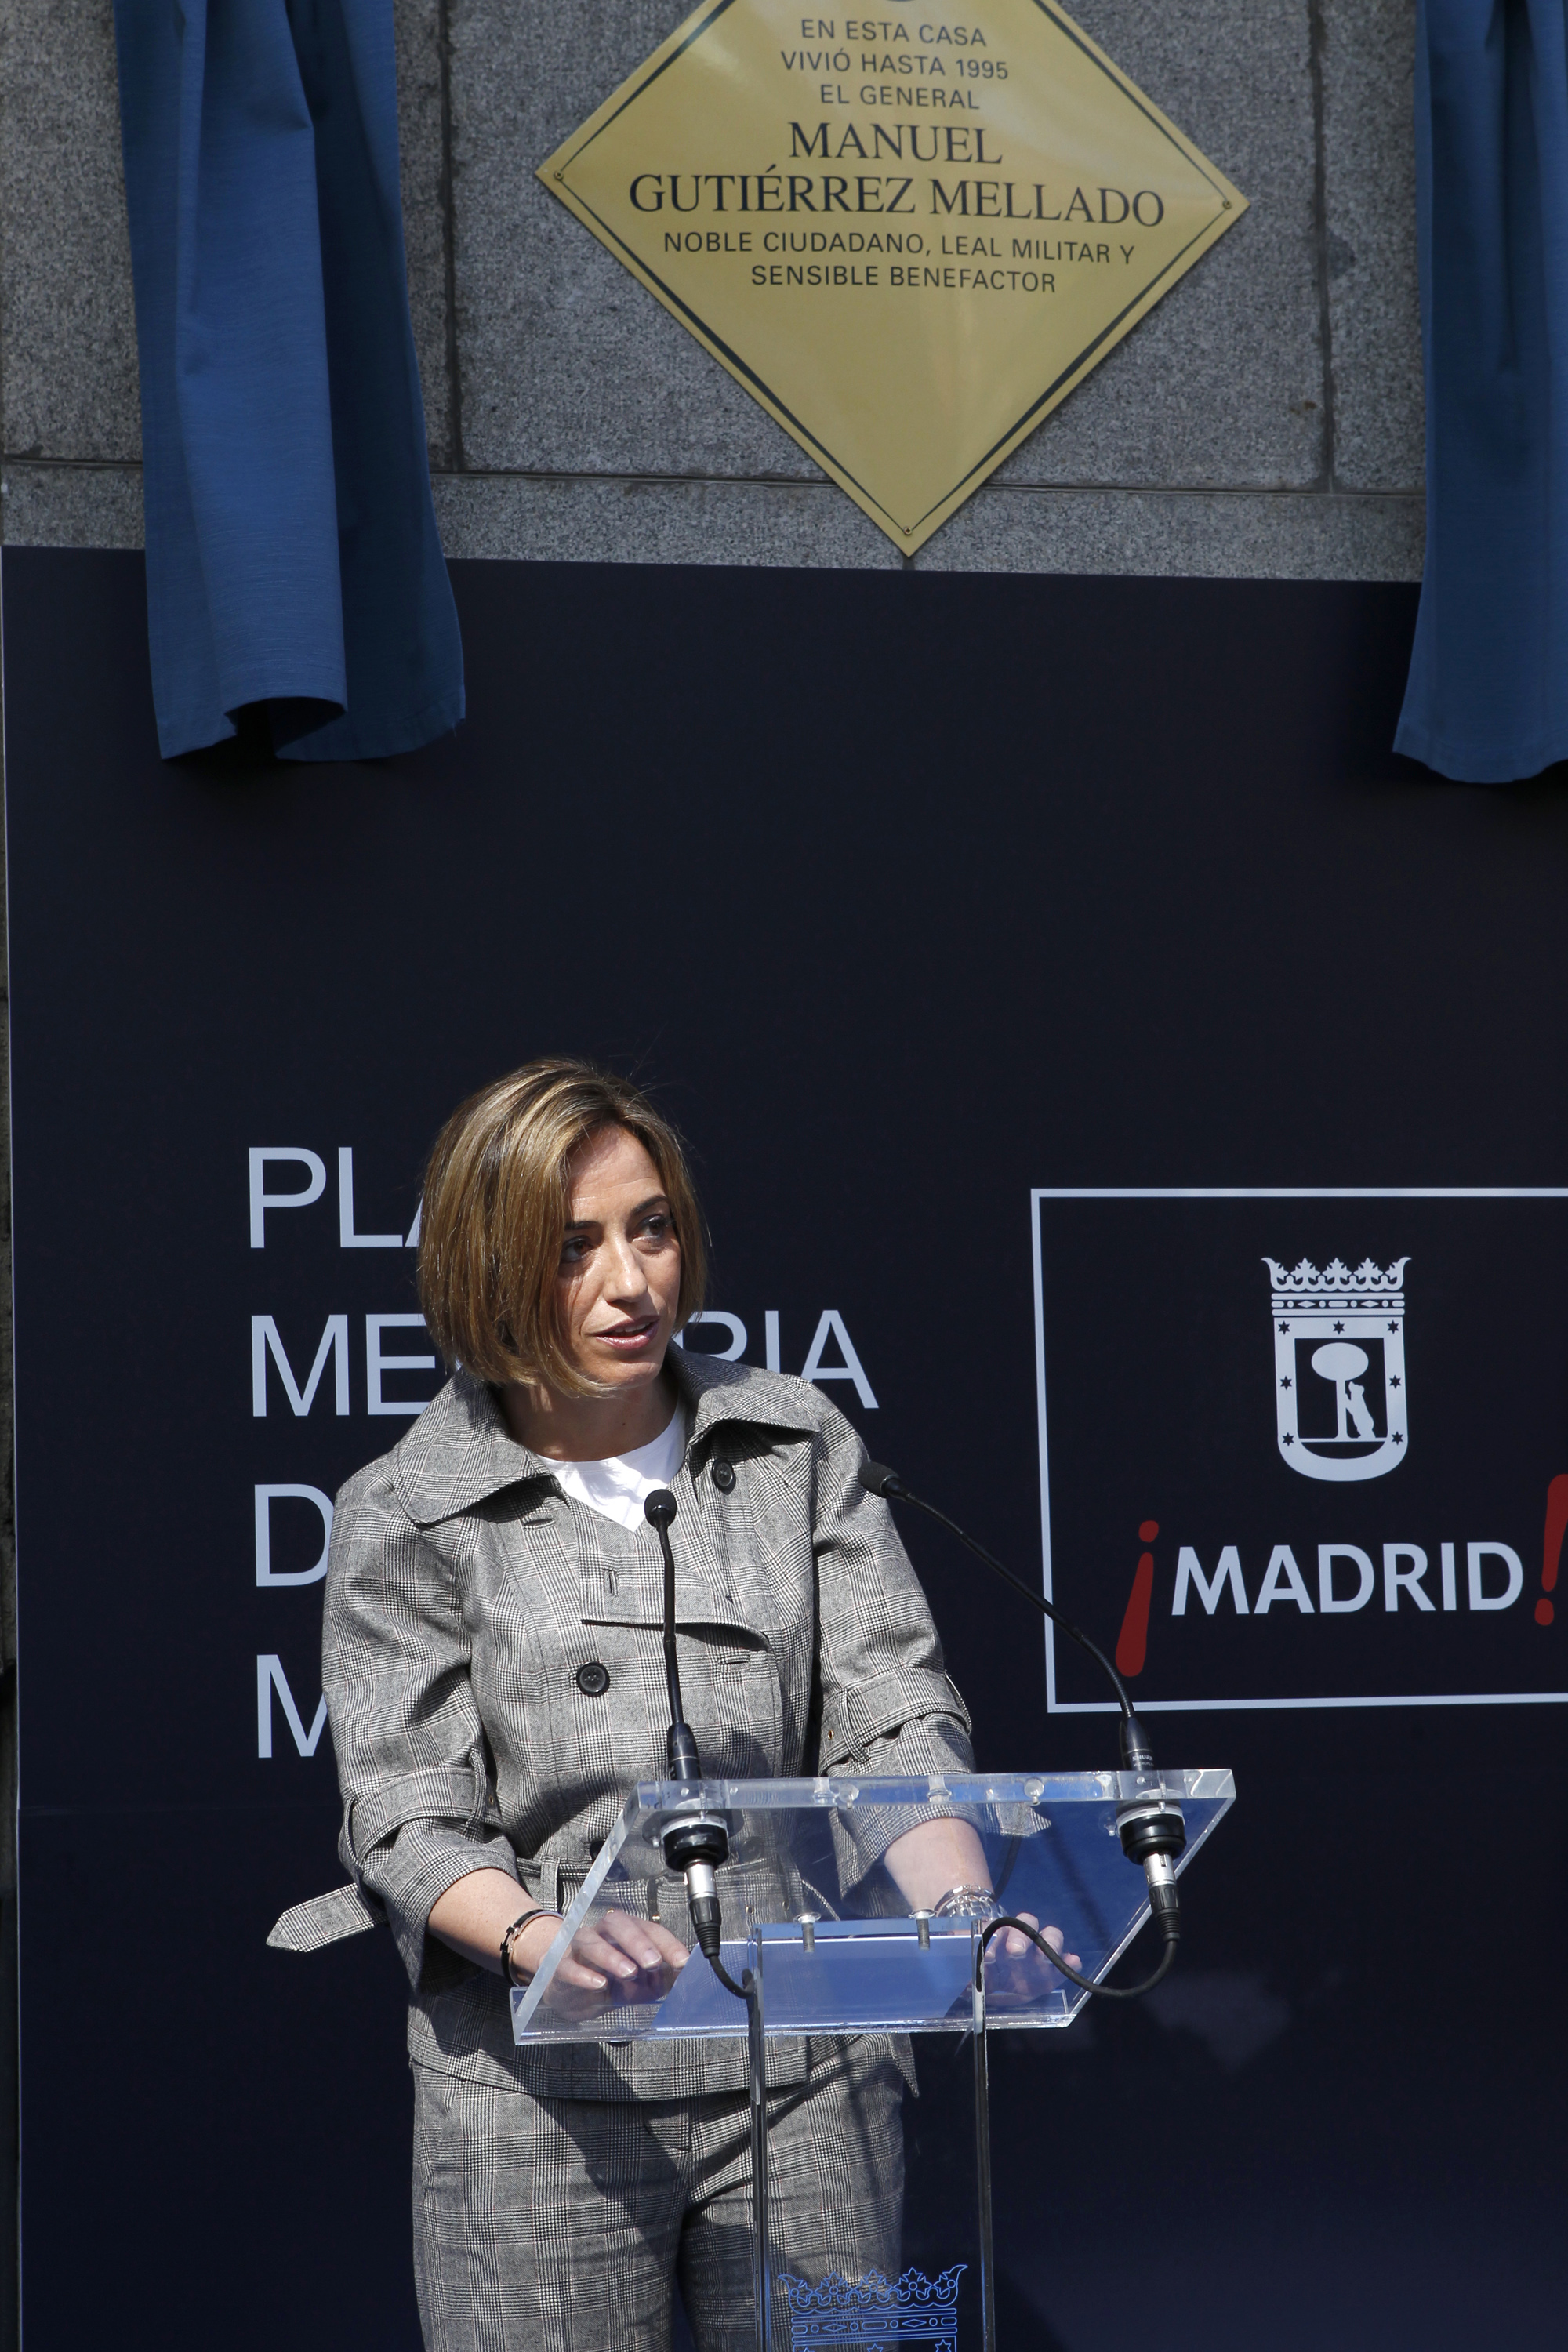 La ministra de Defensa asiste junto al alcalde de Madrid al descubrimiento de una placa en la casa donde vivió el general Gutiérrez Mellado